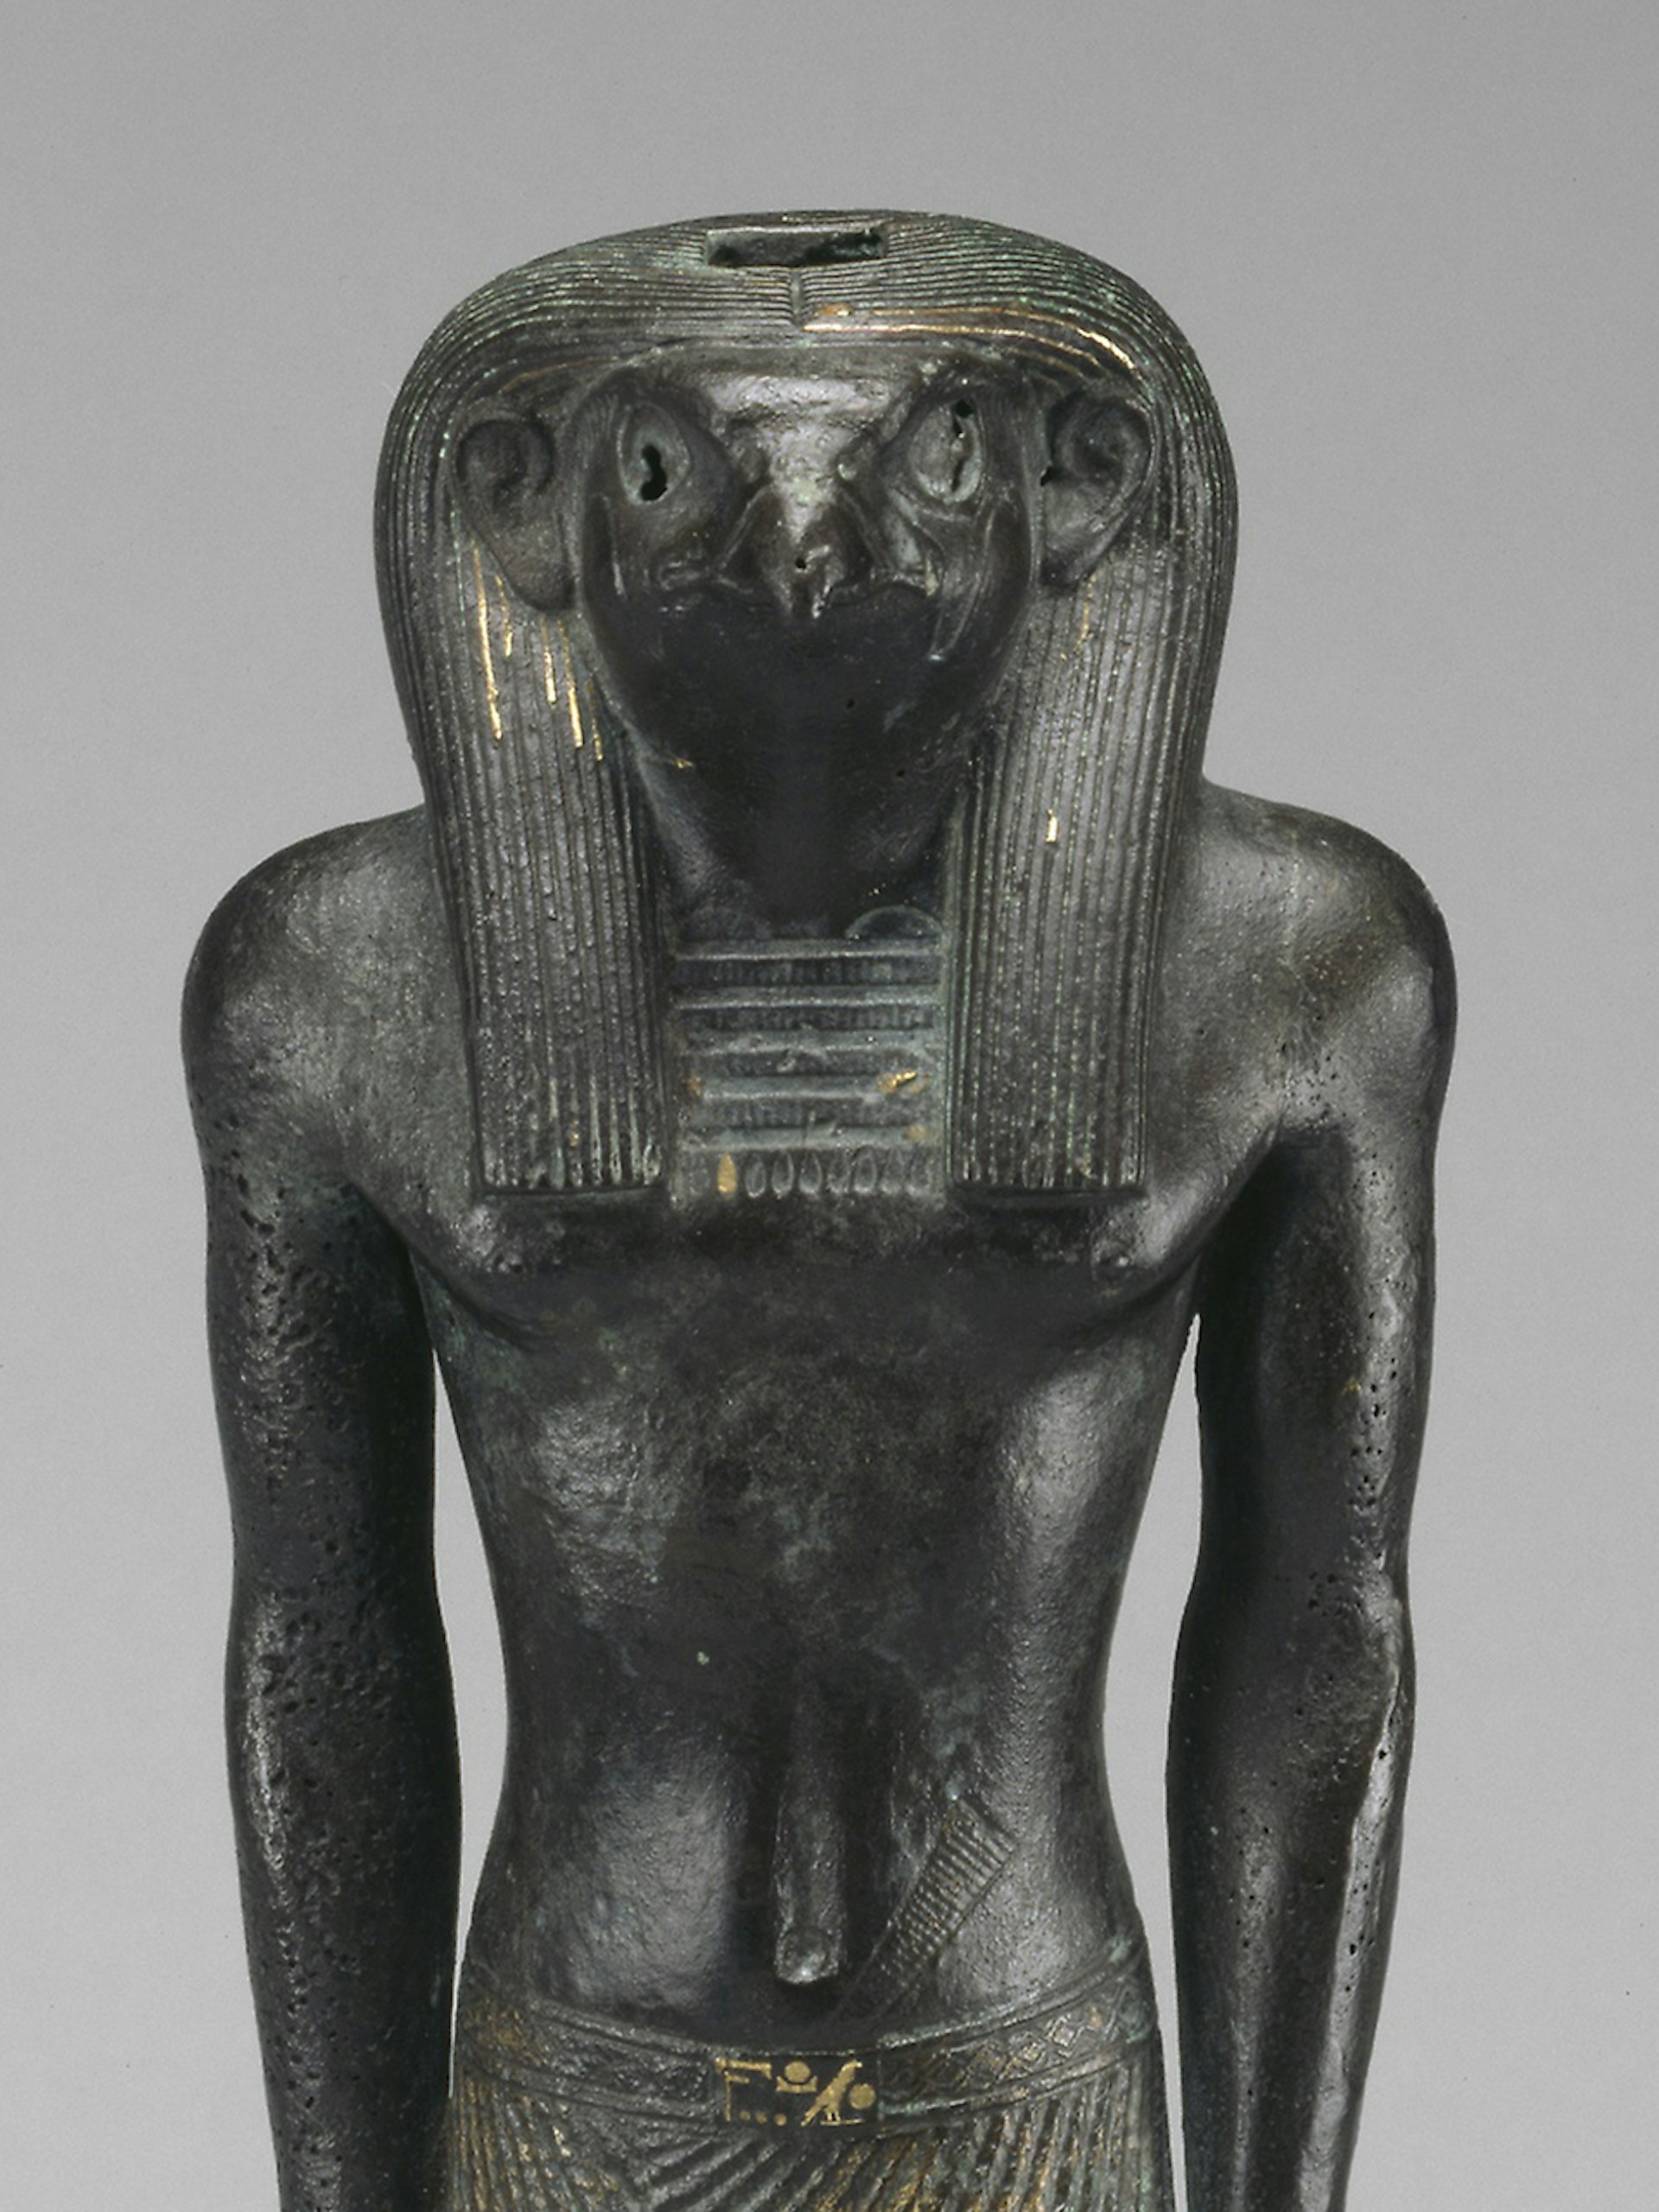 Ra, Egyptian God of the Sun (3:2)